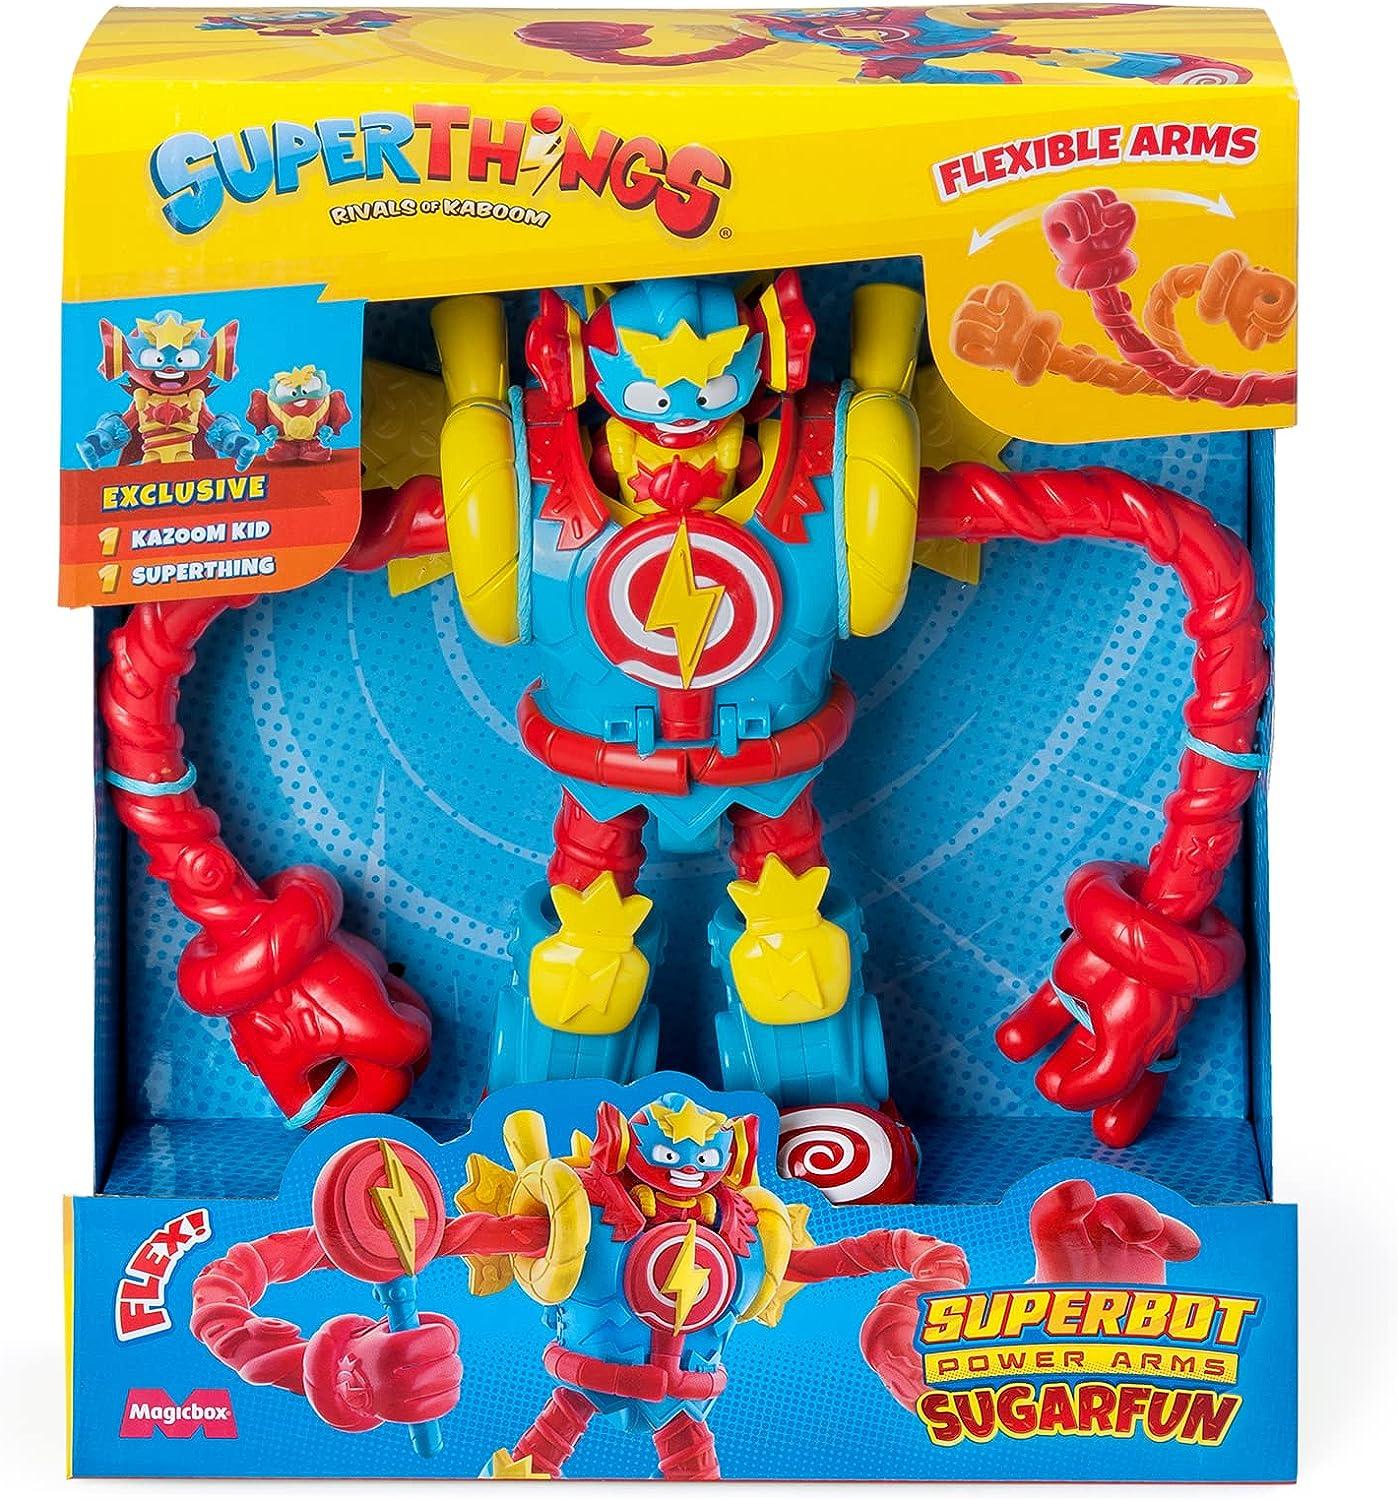 SUPERTHINGS Superbot Power Arms SUGARFUN